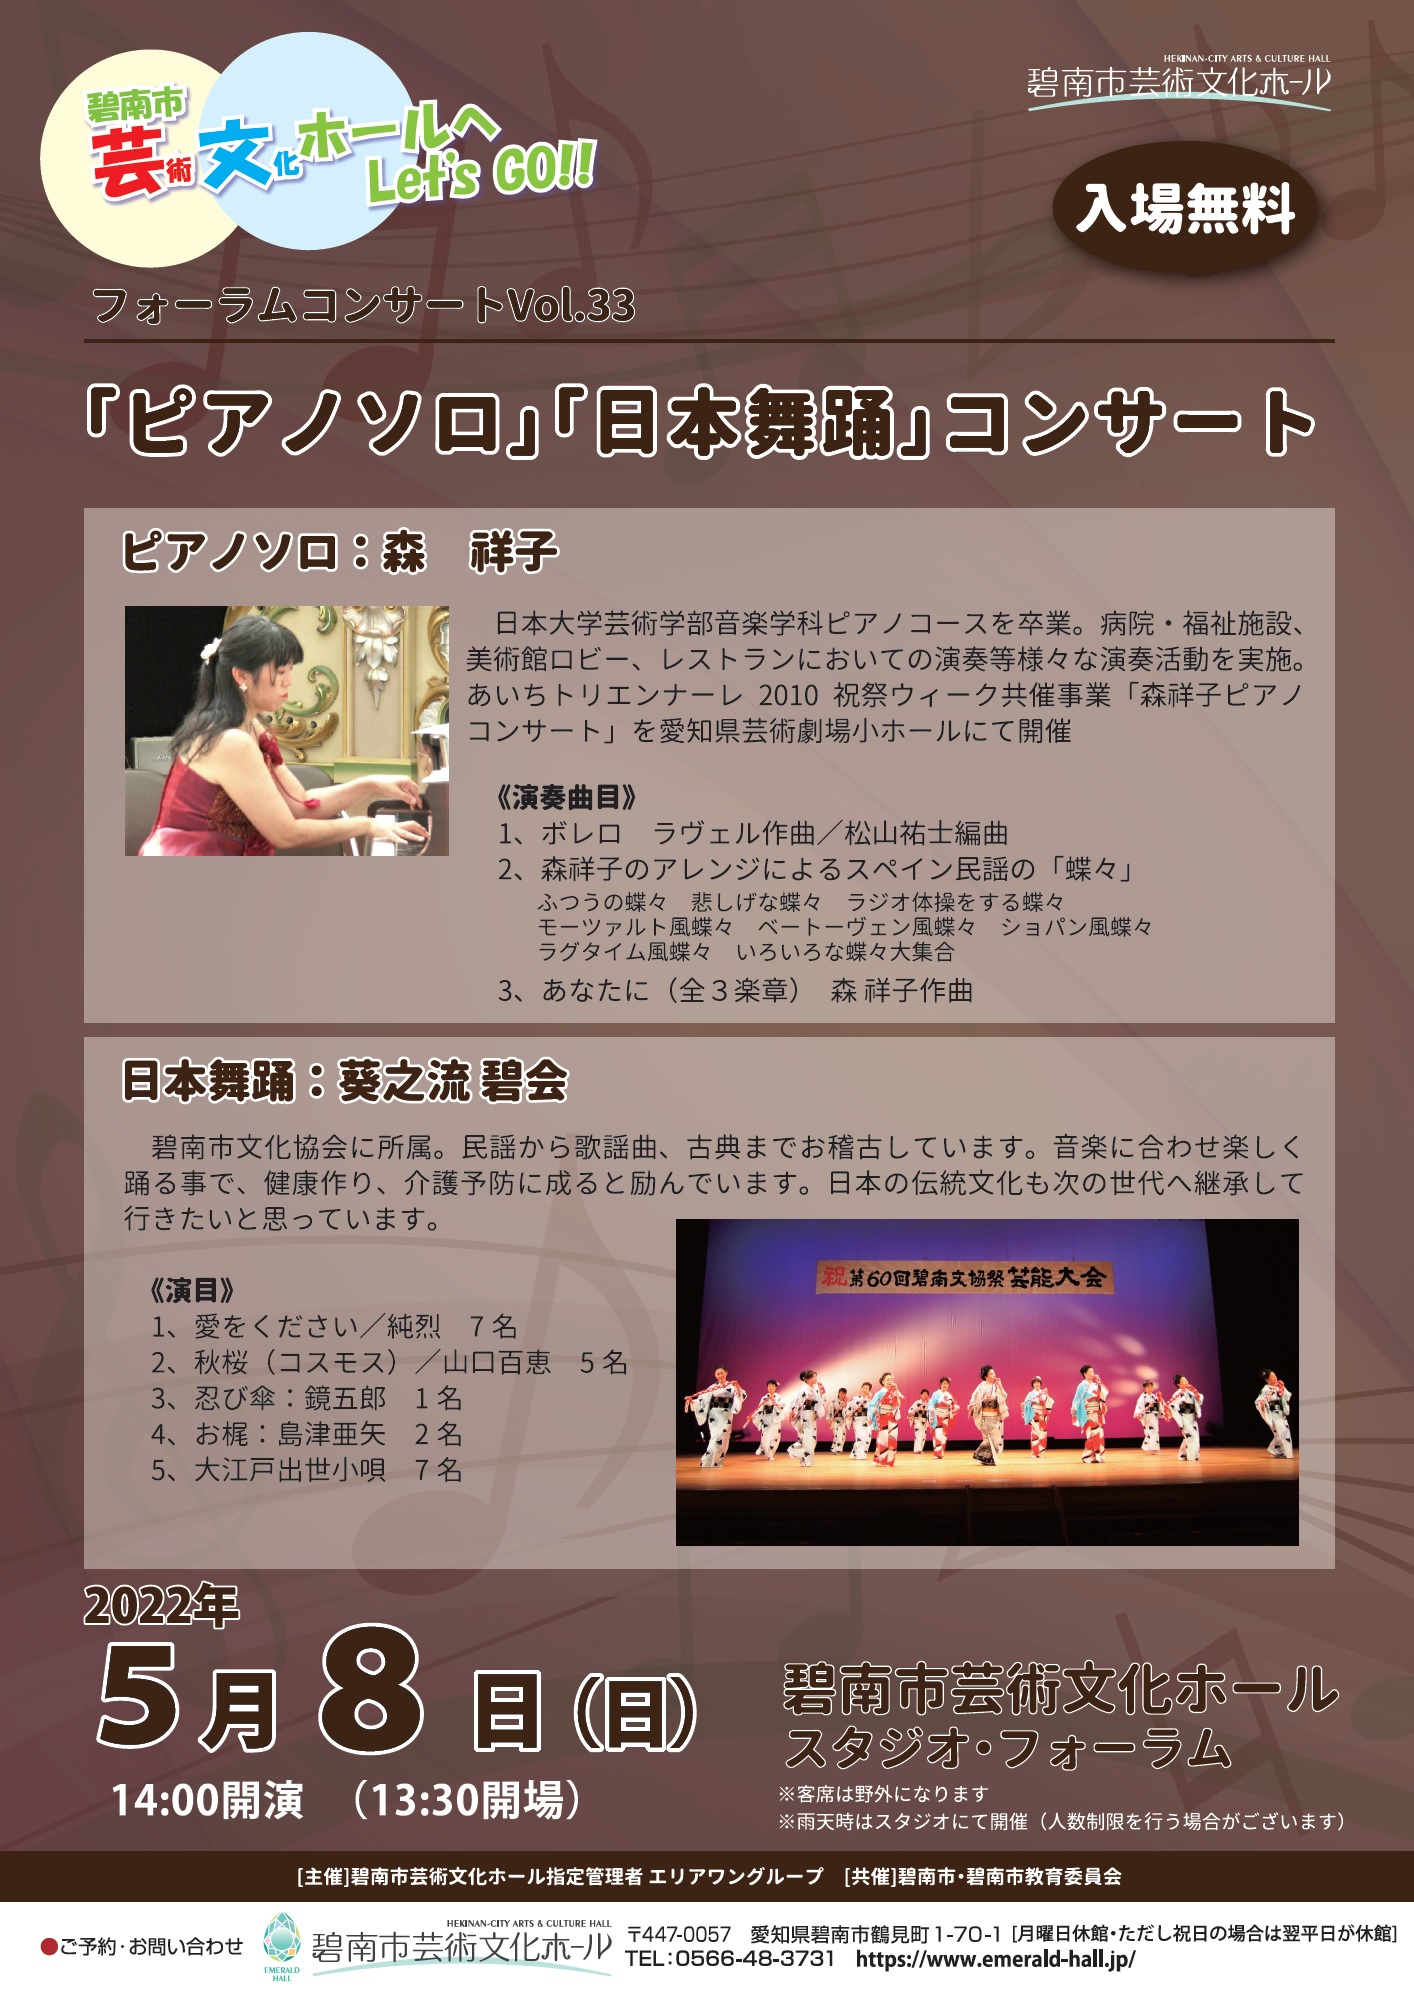 フォーラムコンサートVol.33 「ピアノソロ」「日本舞踊」